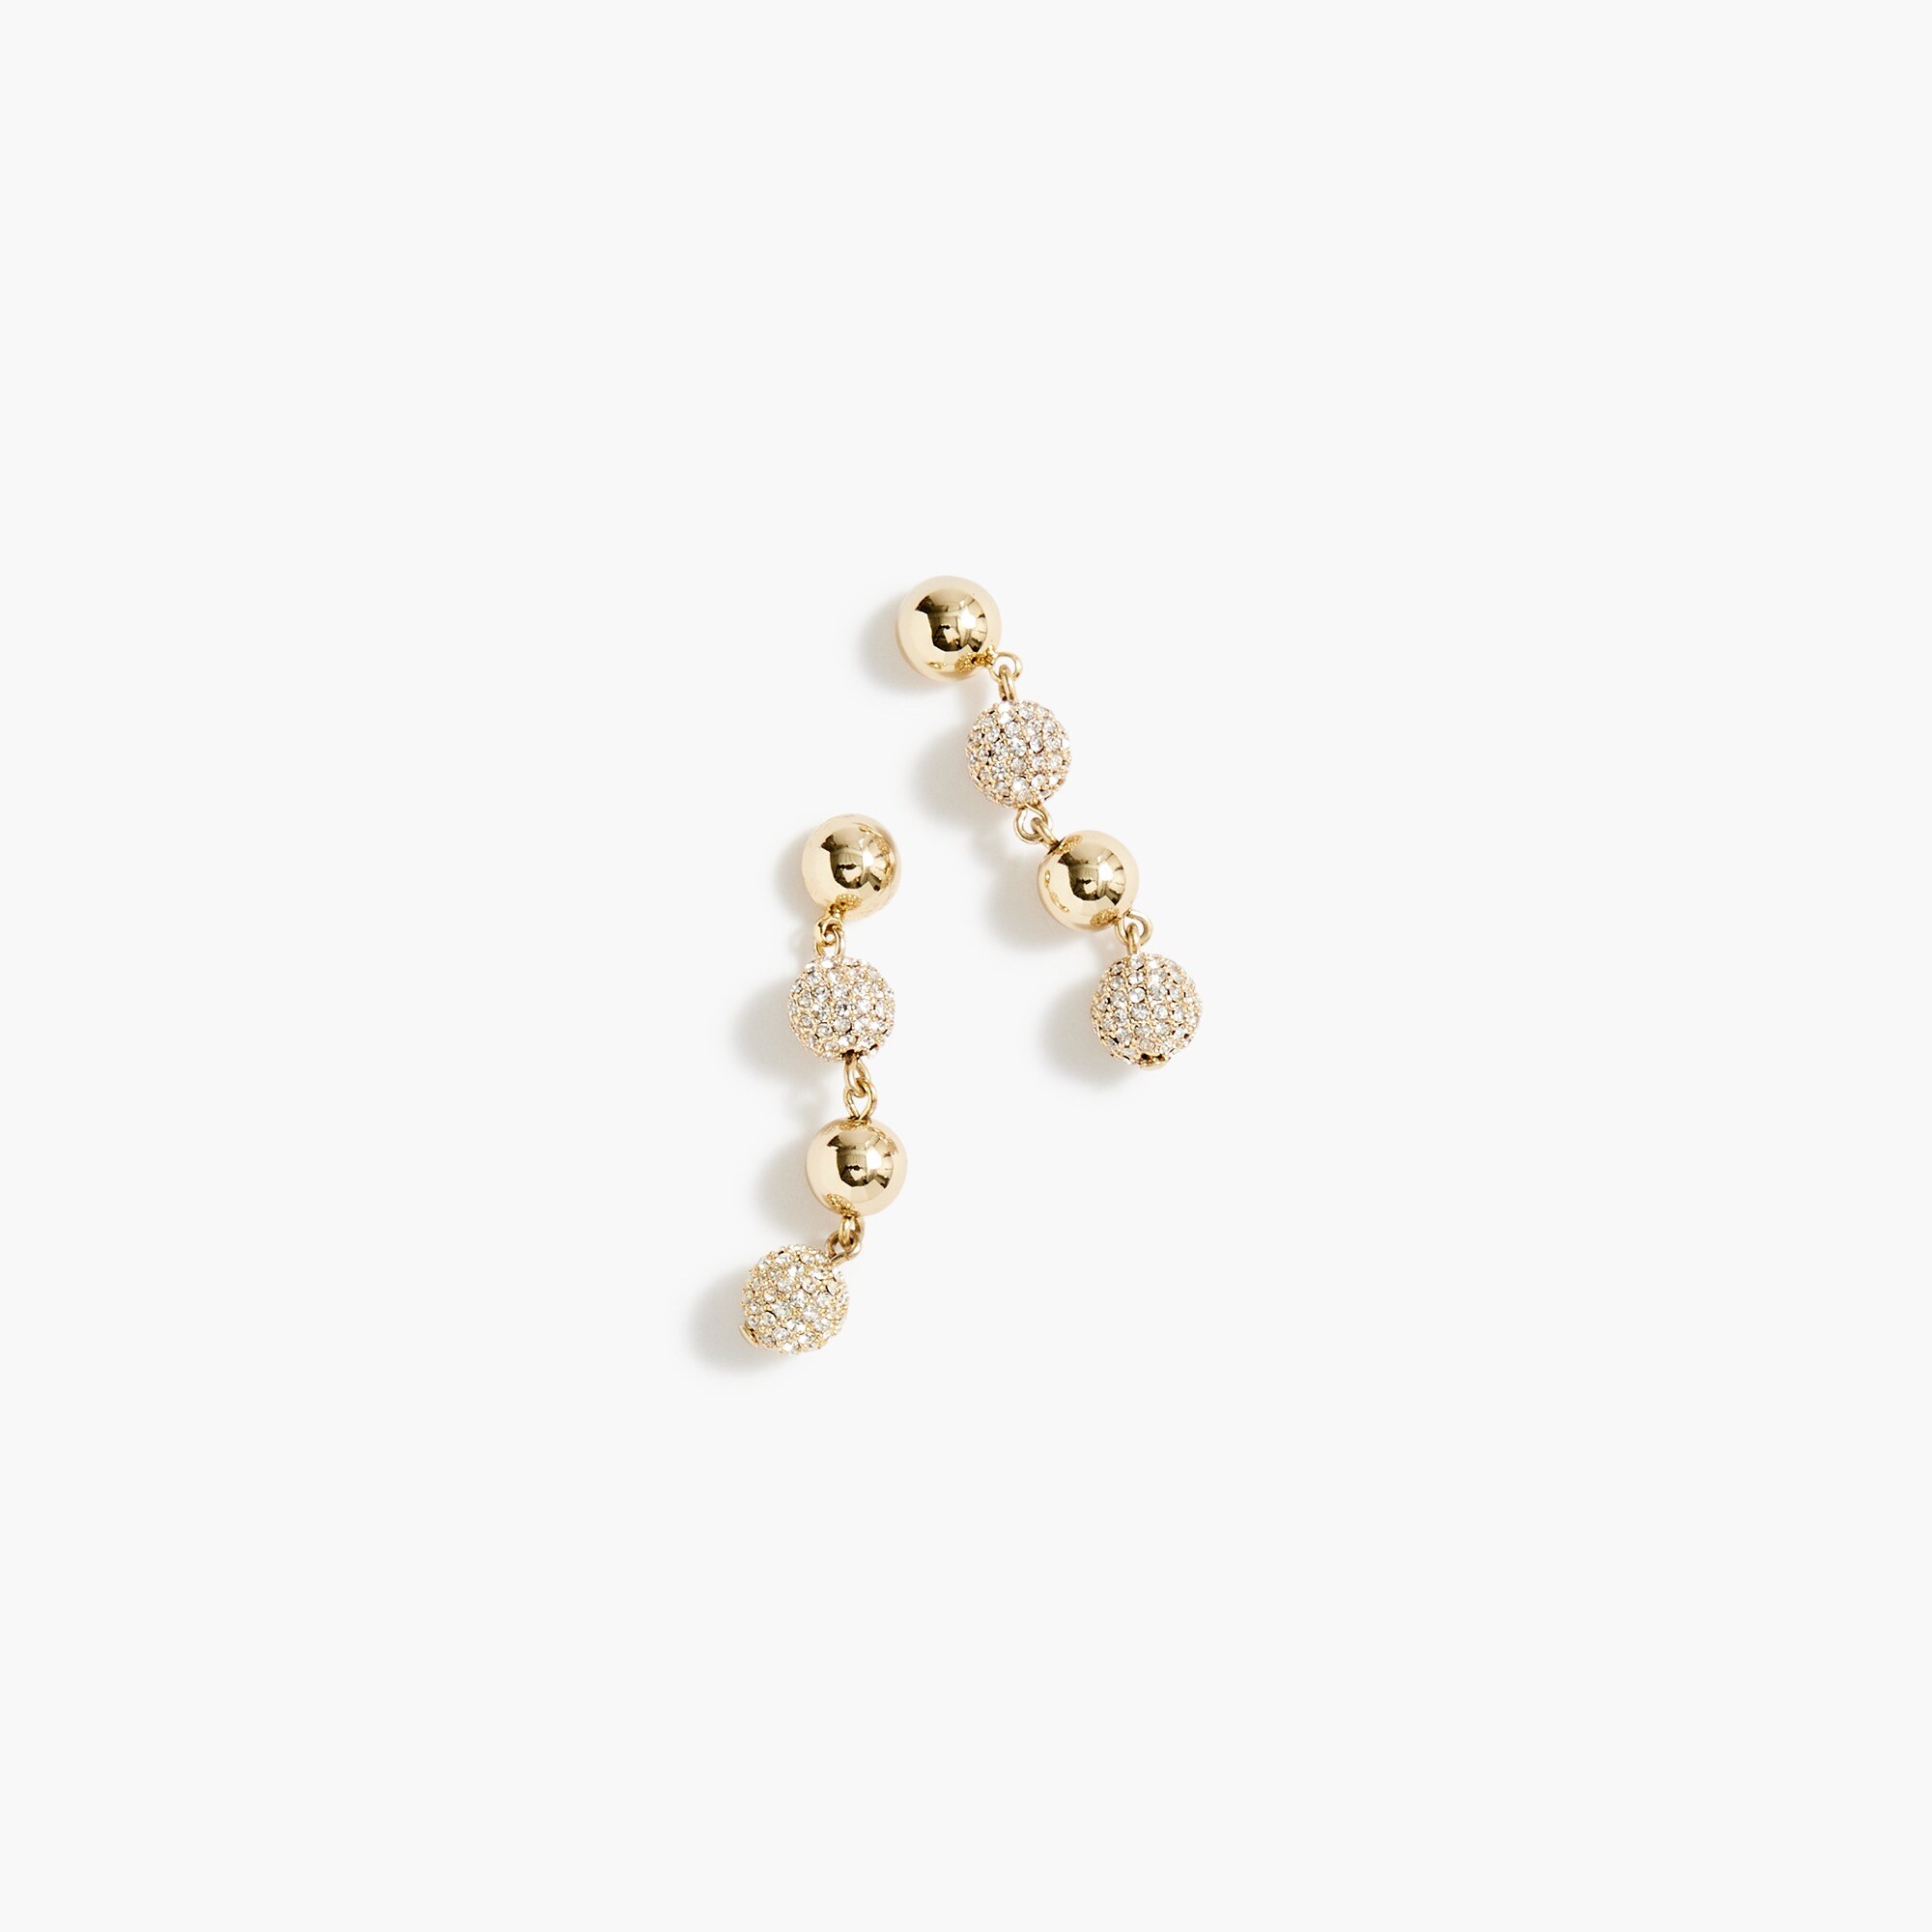  Gold drop bauble earrings